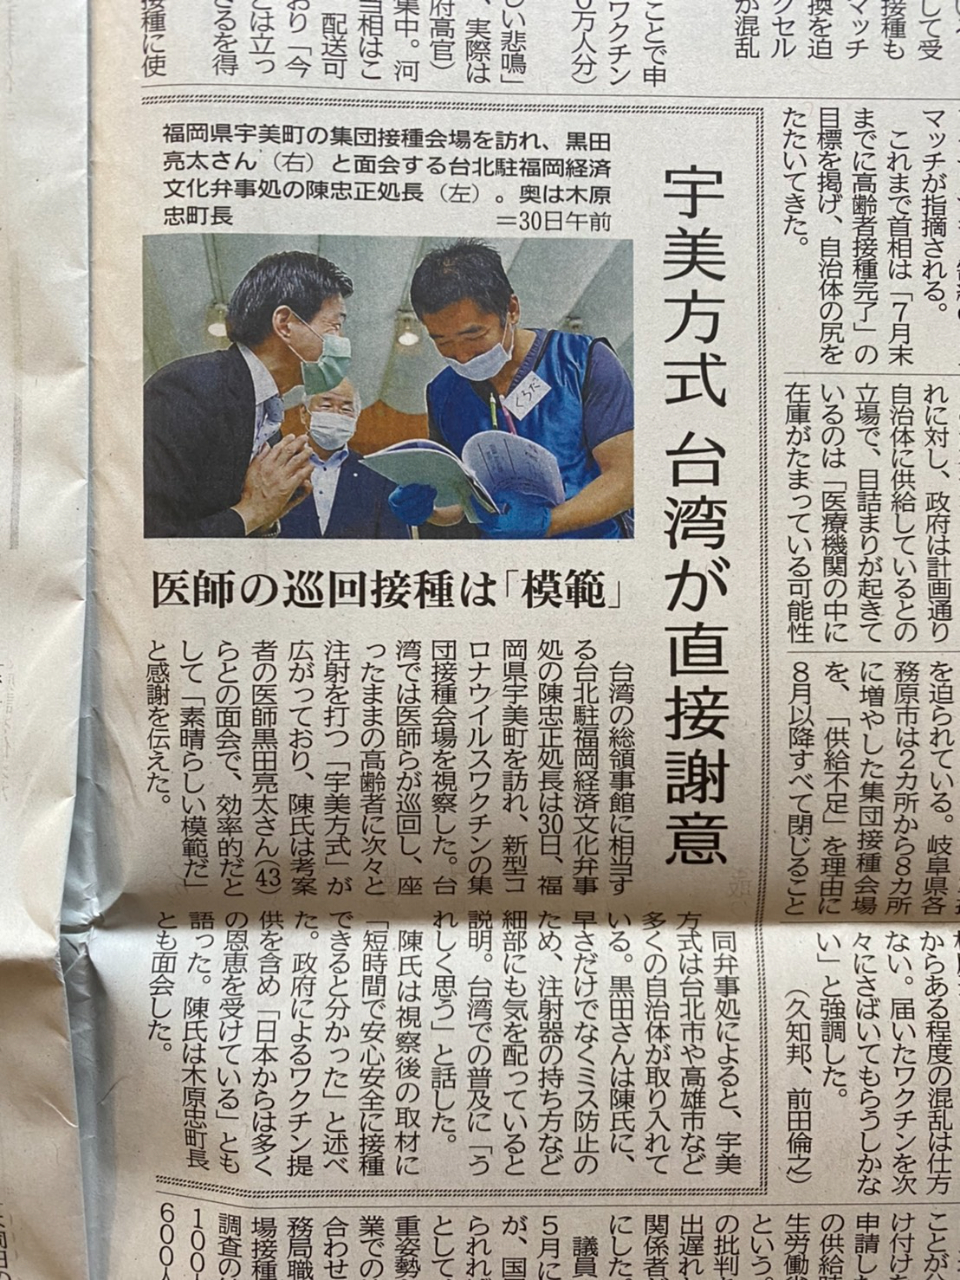 6月30日、陳総領事が宇美町を表敬訪問し、新型コロナウイルスワクチンの集団接種会場を視察した。
7月1日西日本新聞報道